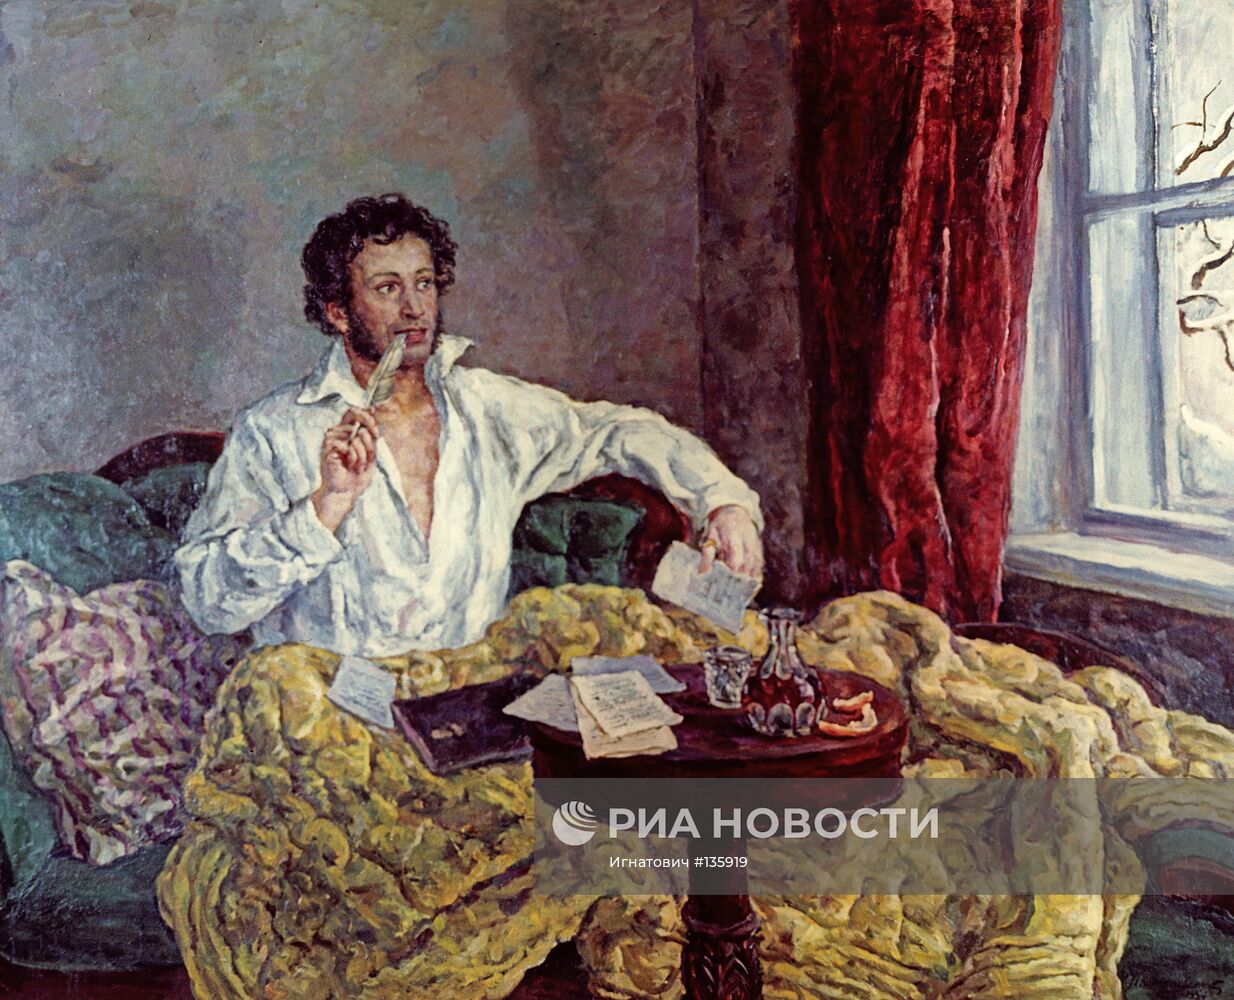 Репродукция картины Кончаловского " Пушкин  в Михайловском"